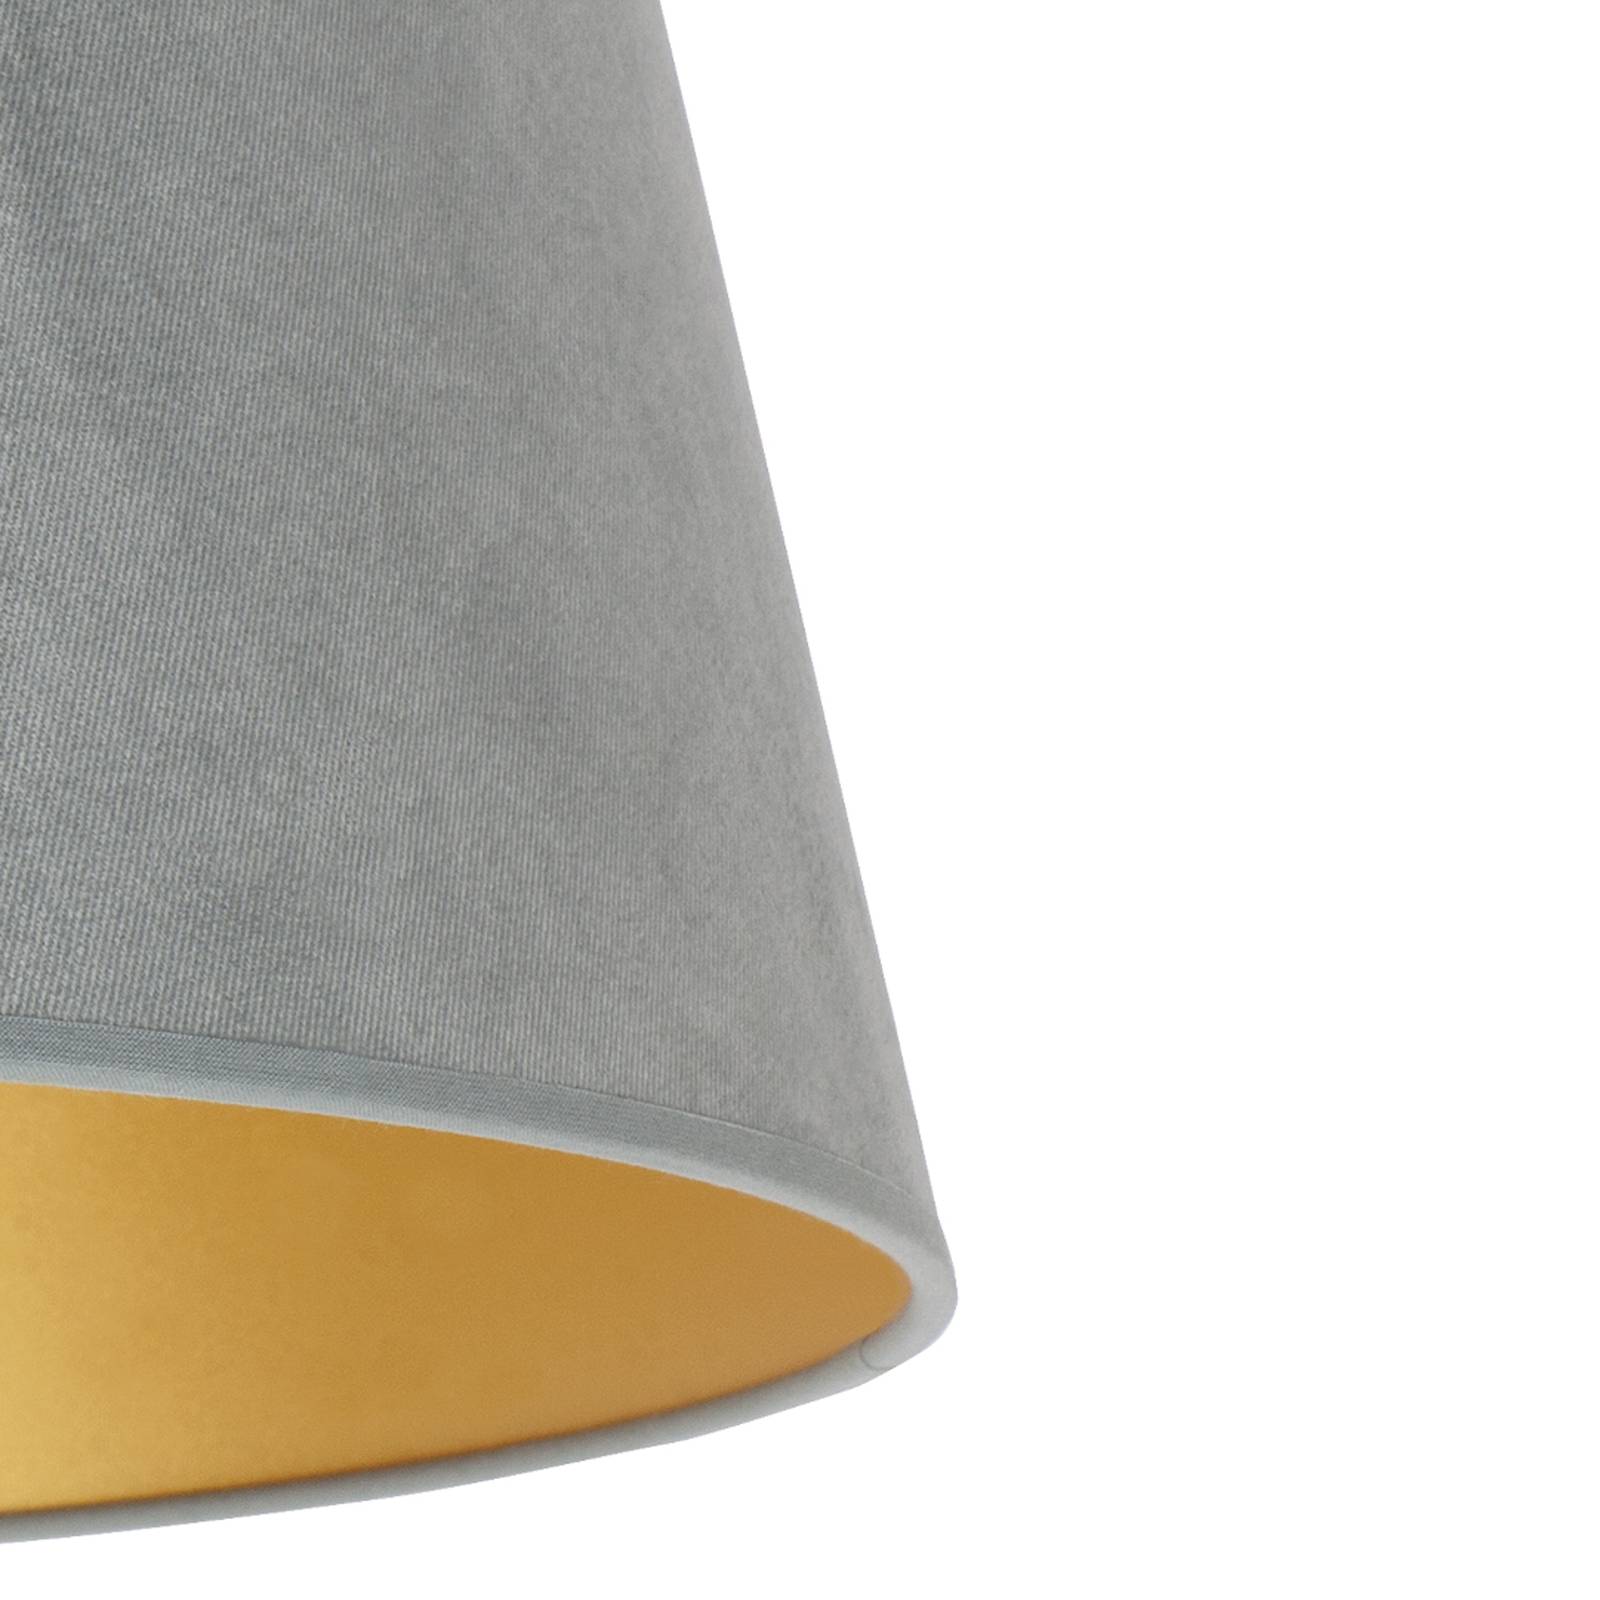 Cone lámpaernyő 22,5 cm magas, mentazöld/arany